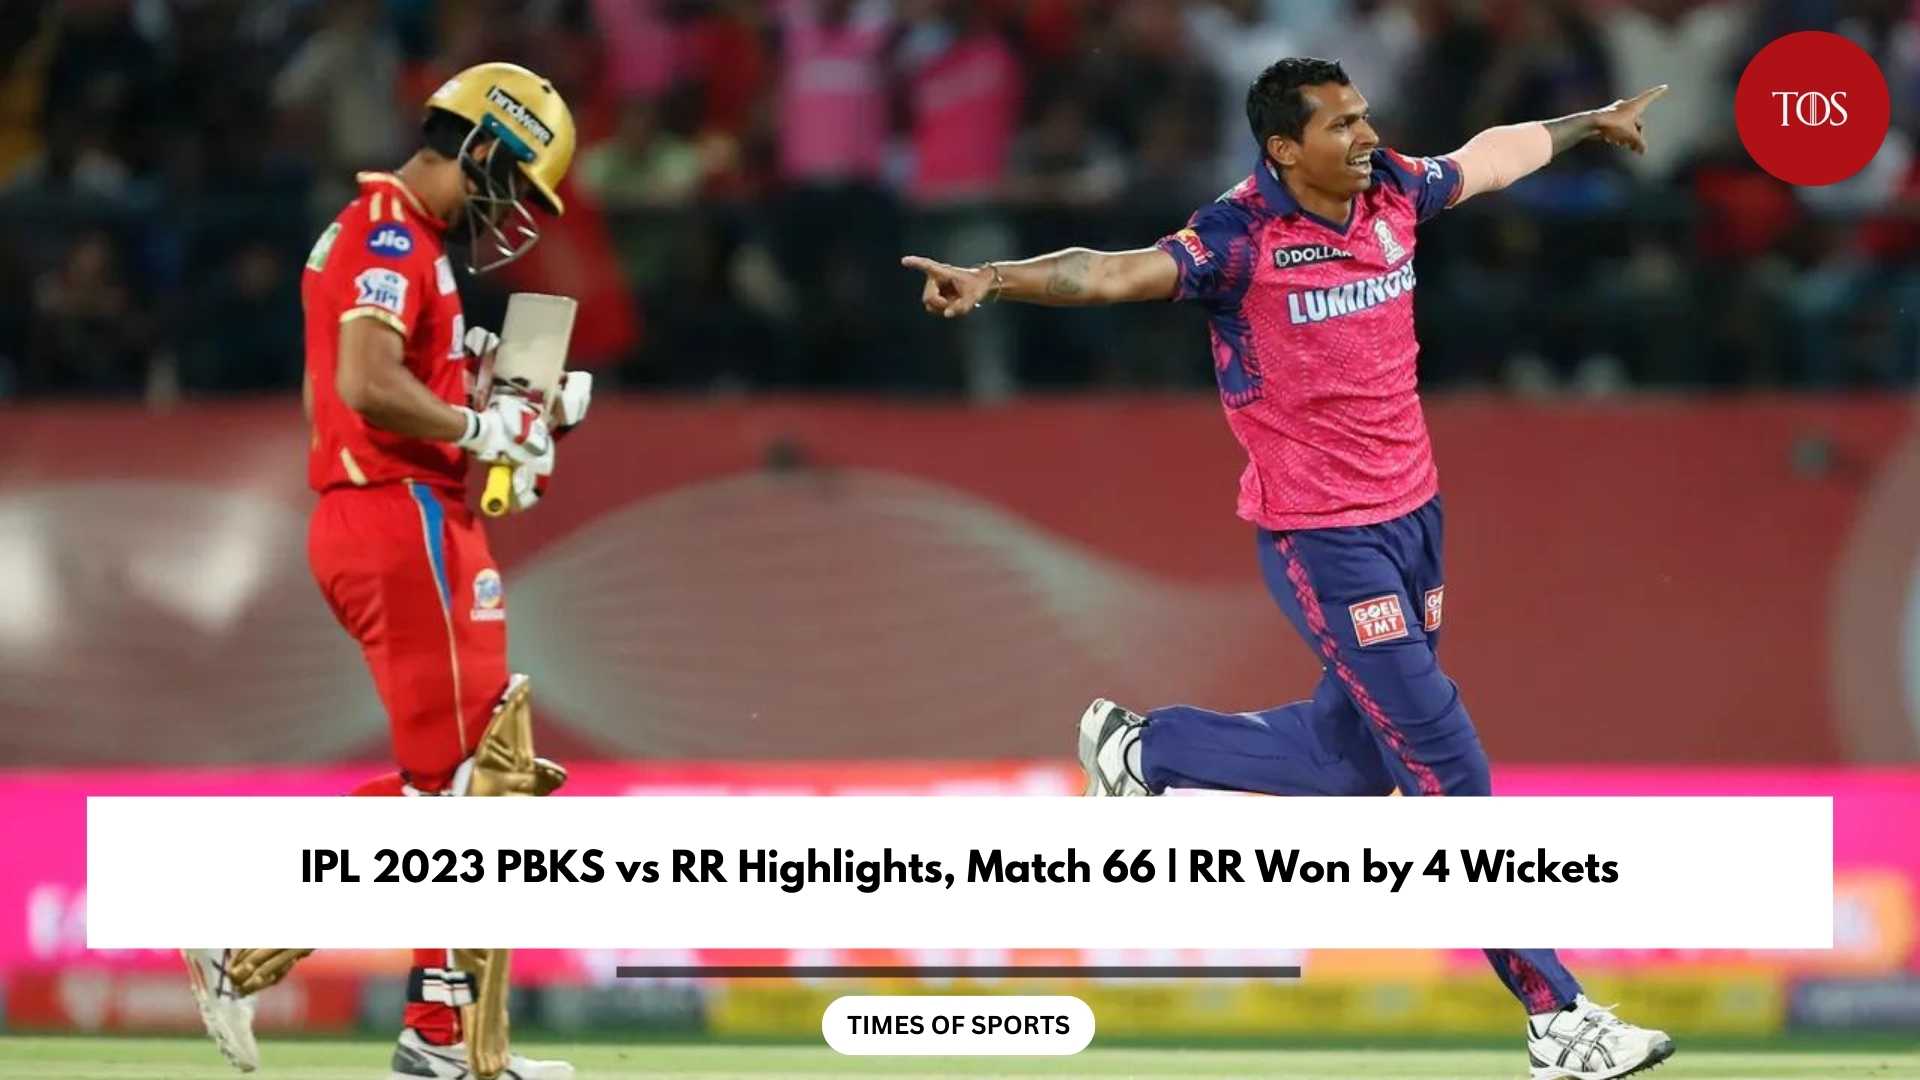 IPL 2023 PBKS vs RR Highlights